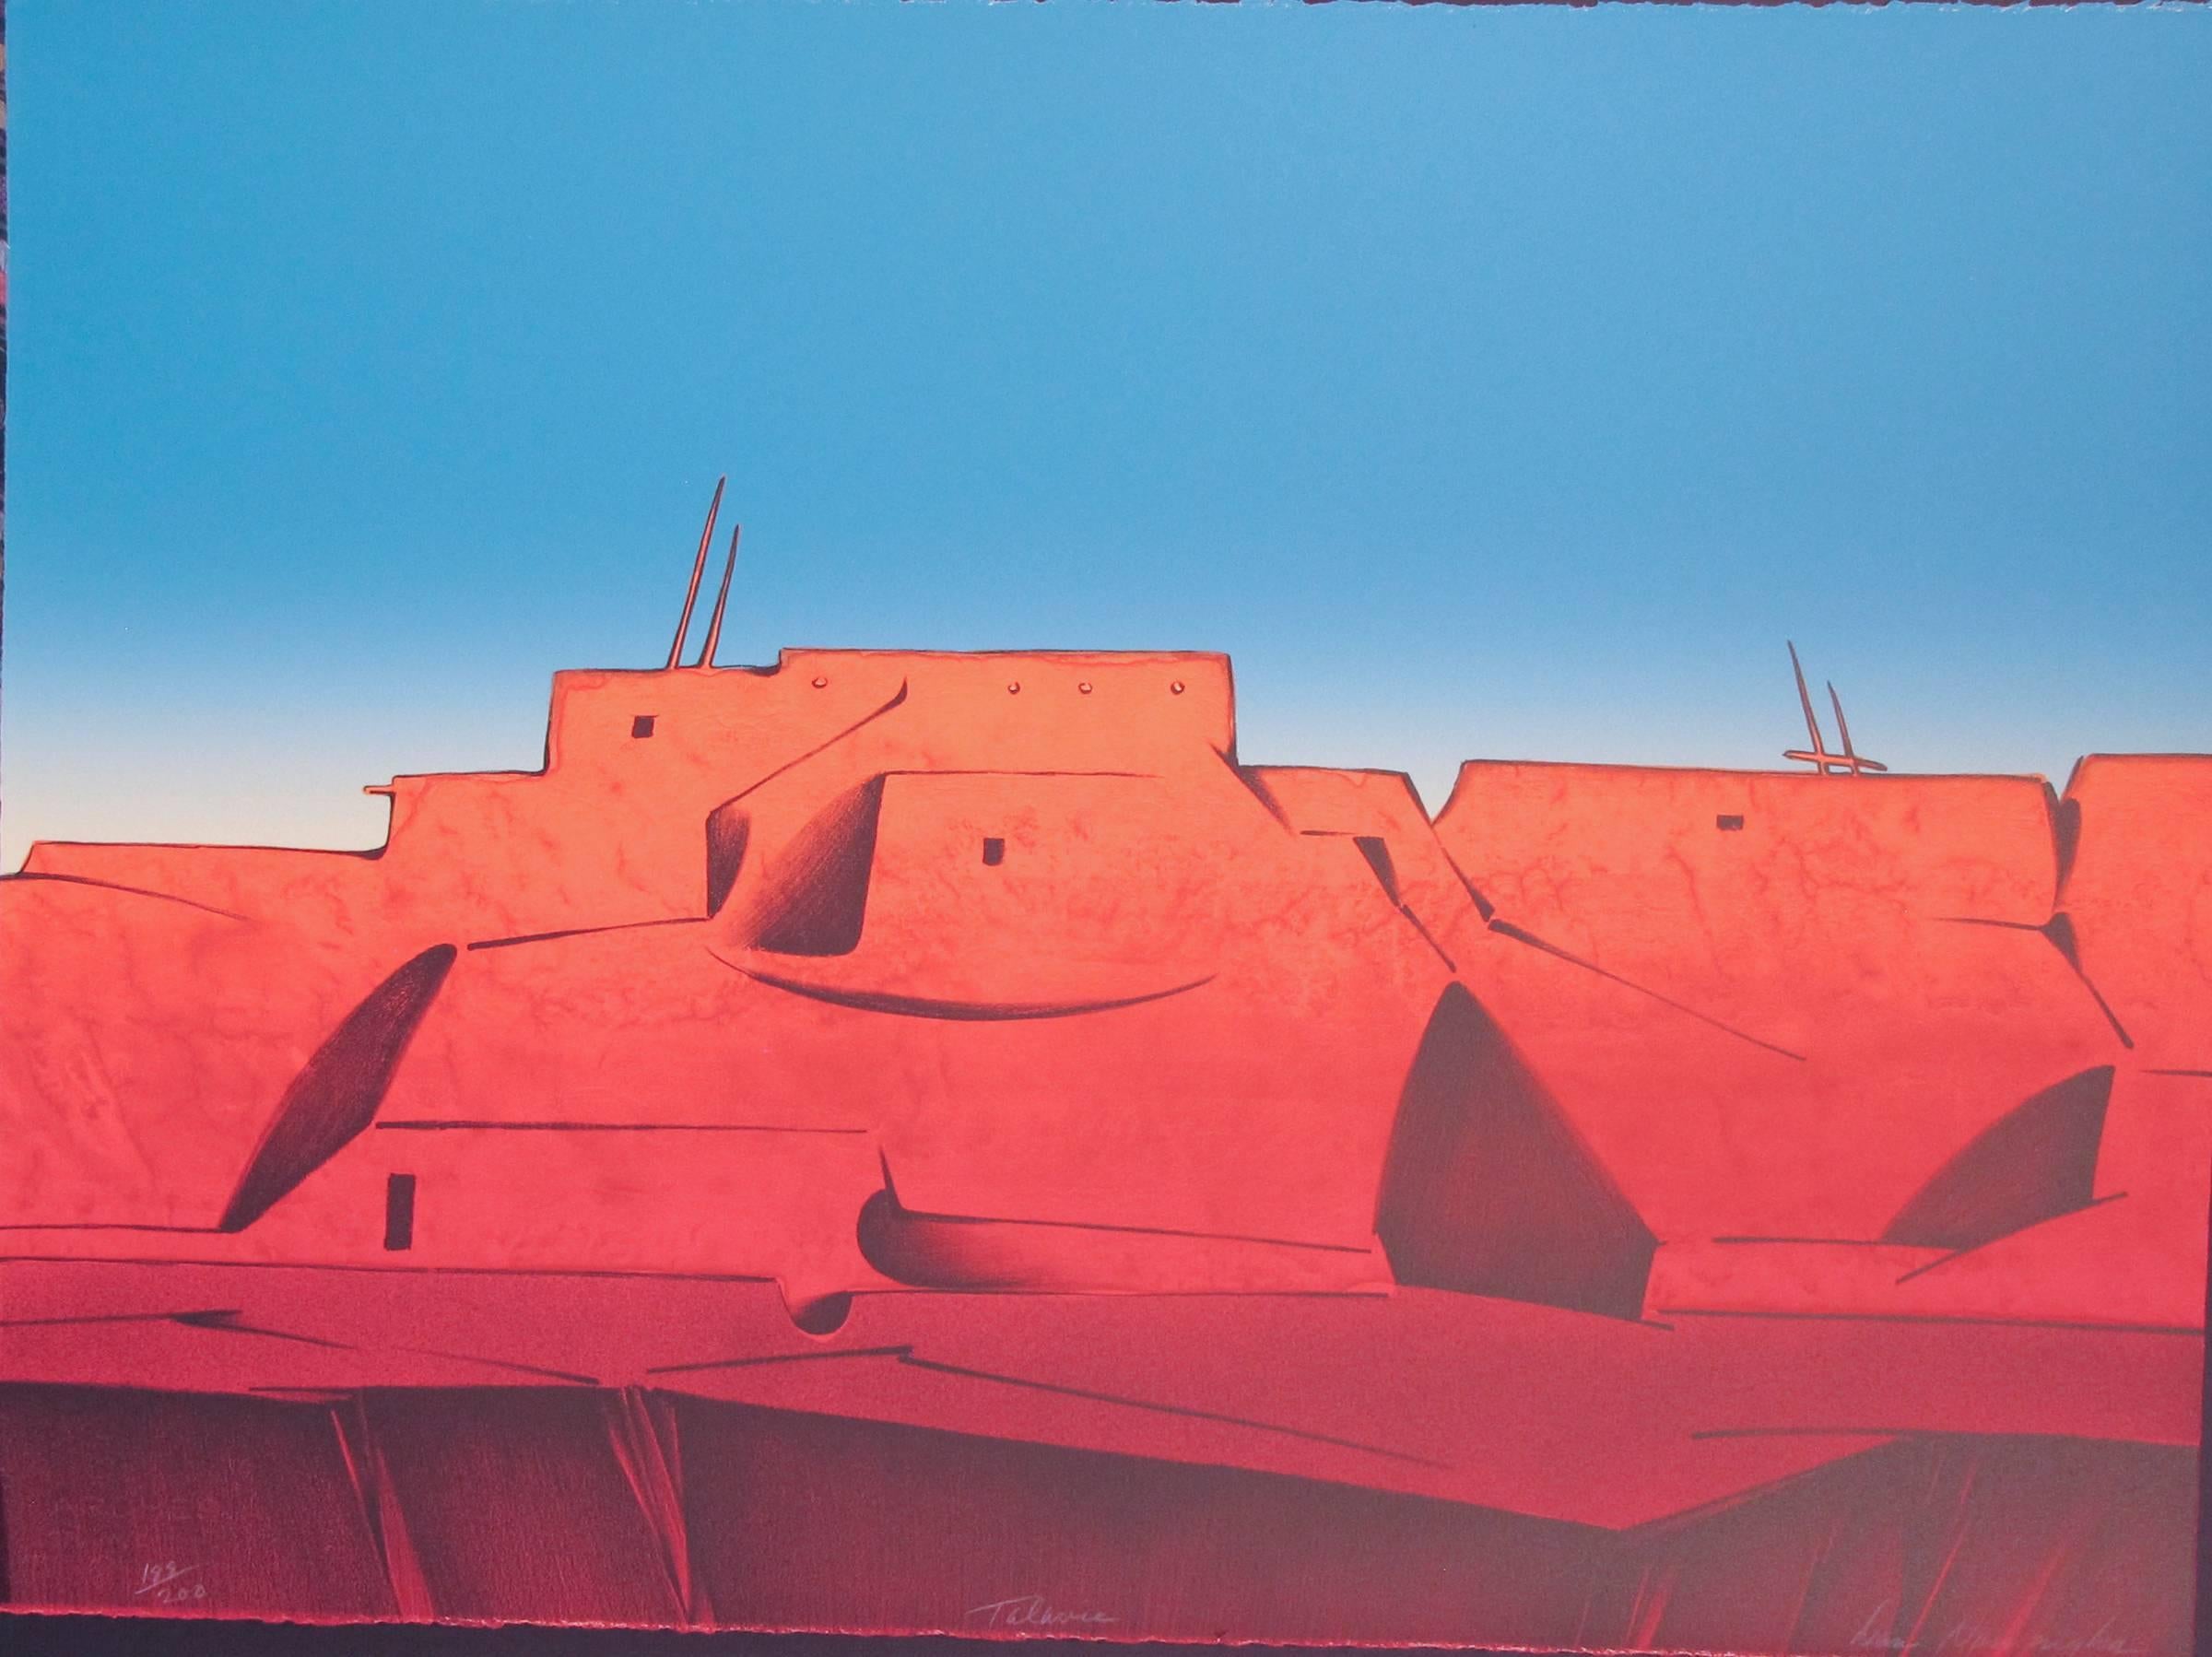 Talavie, paysage du désert Hopi, scène de village, bleus, rouges, par Dan Namingha


lithographie en édition limitée tirée à la main 
signé et numéro numéro numéro signé par l'artiste